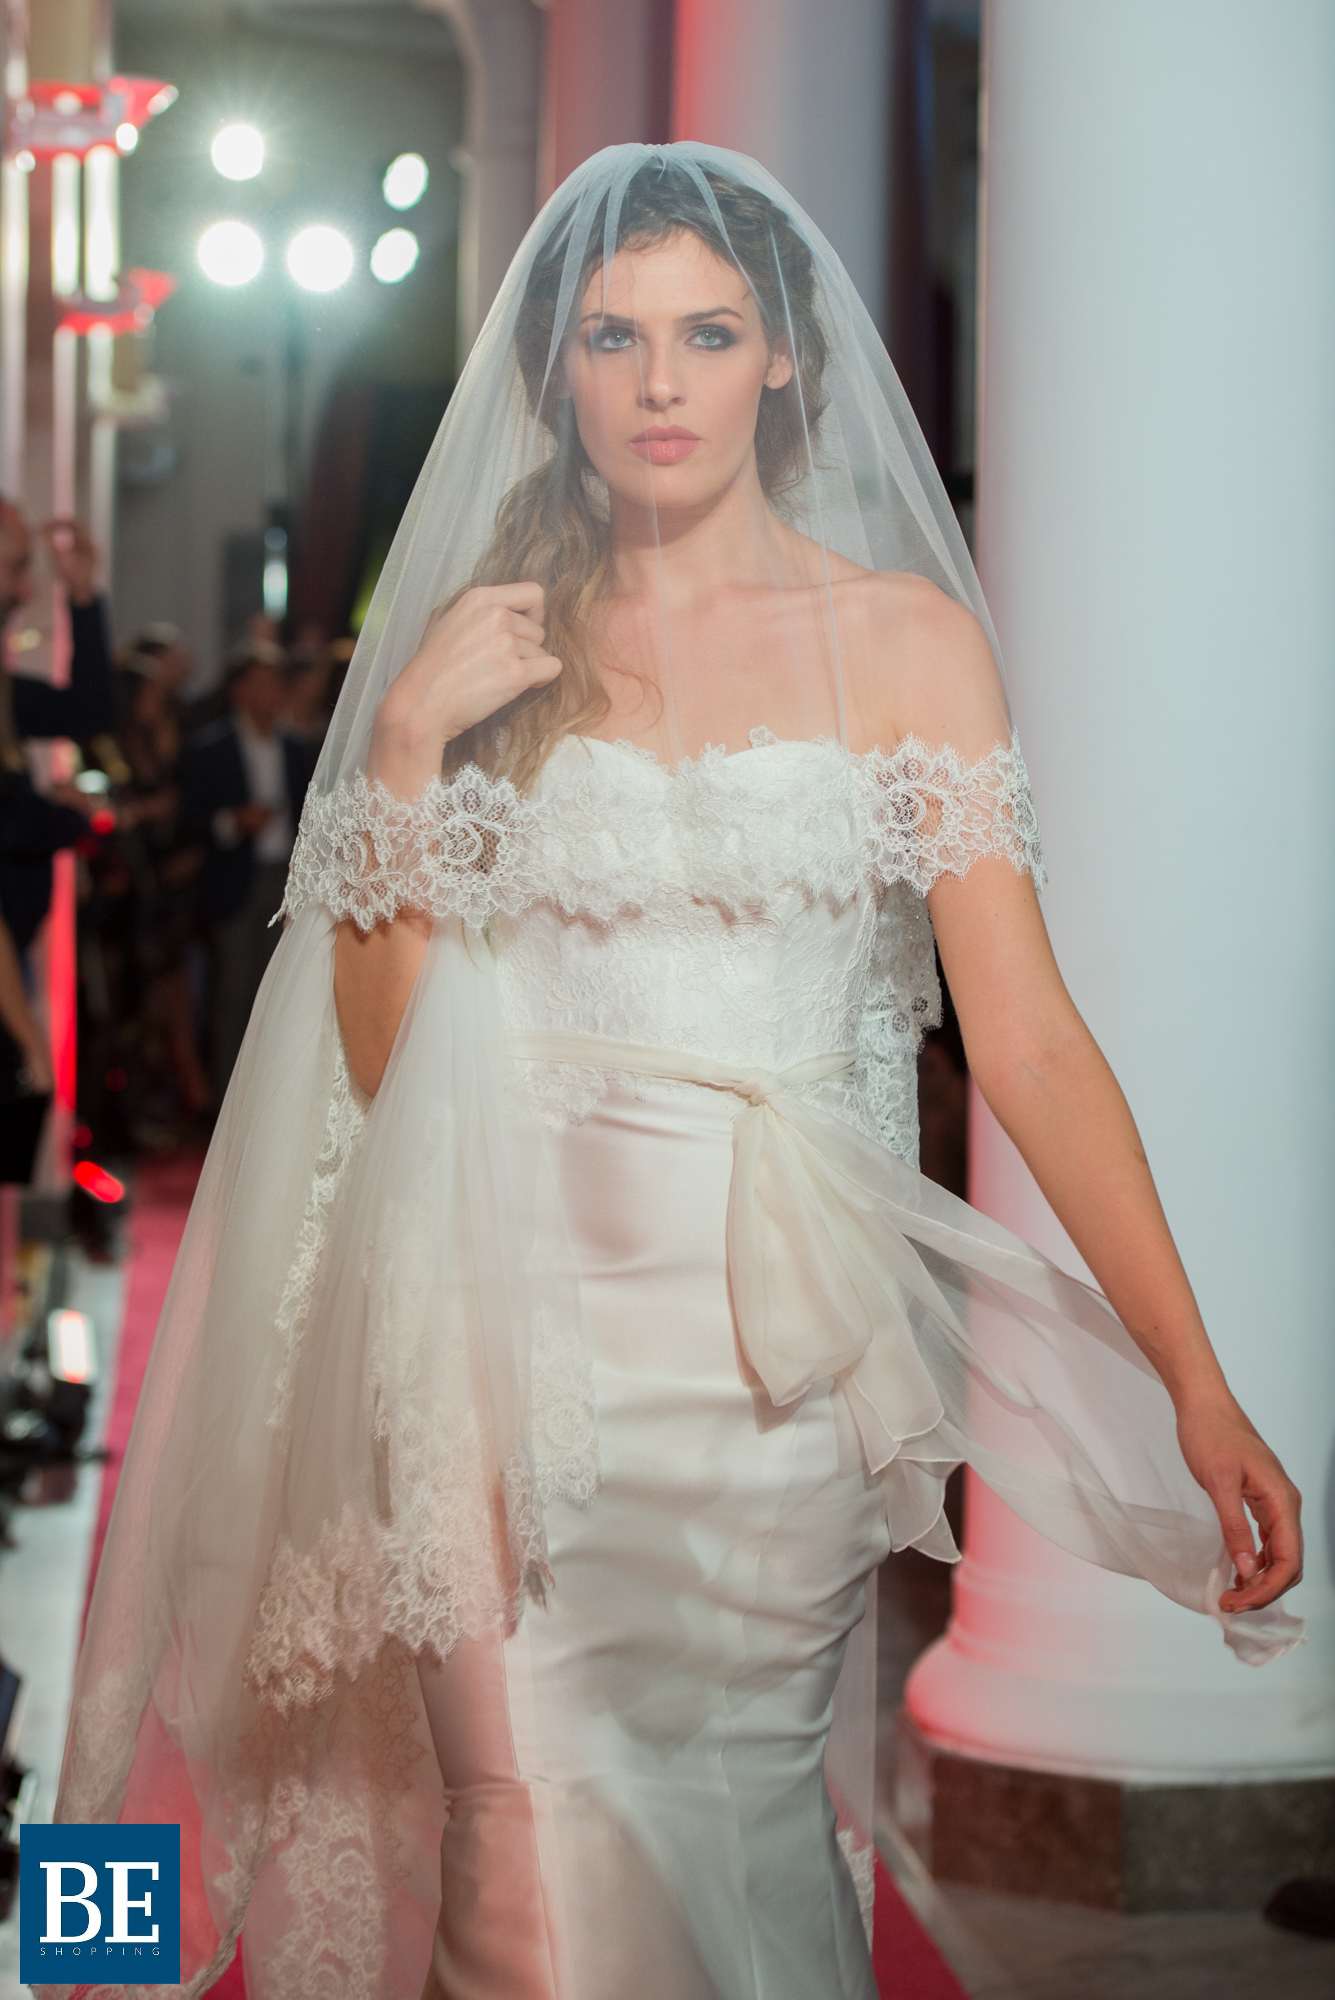 Come scegliere il velo da sposa: abbinamenti, tipologie, tessuti - Stefania  Spose Parma